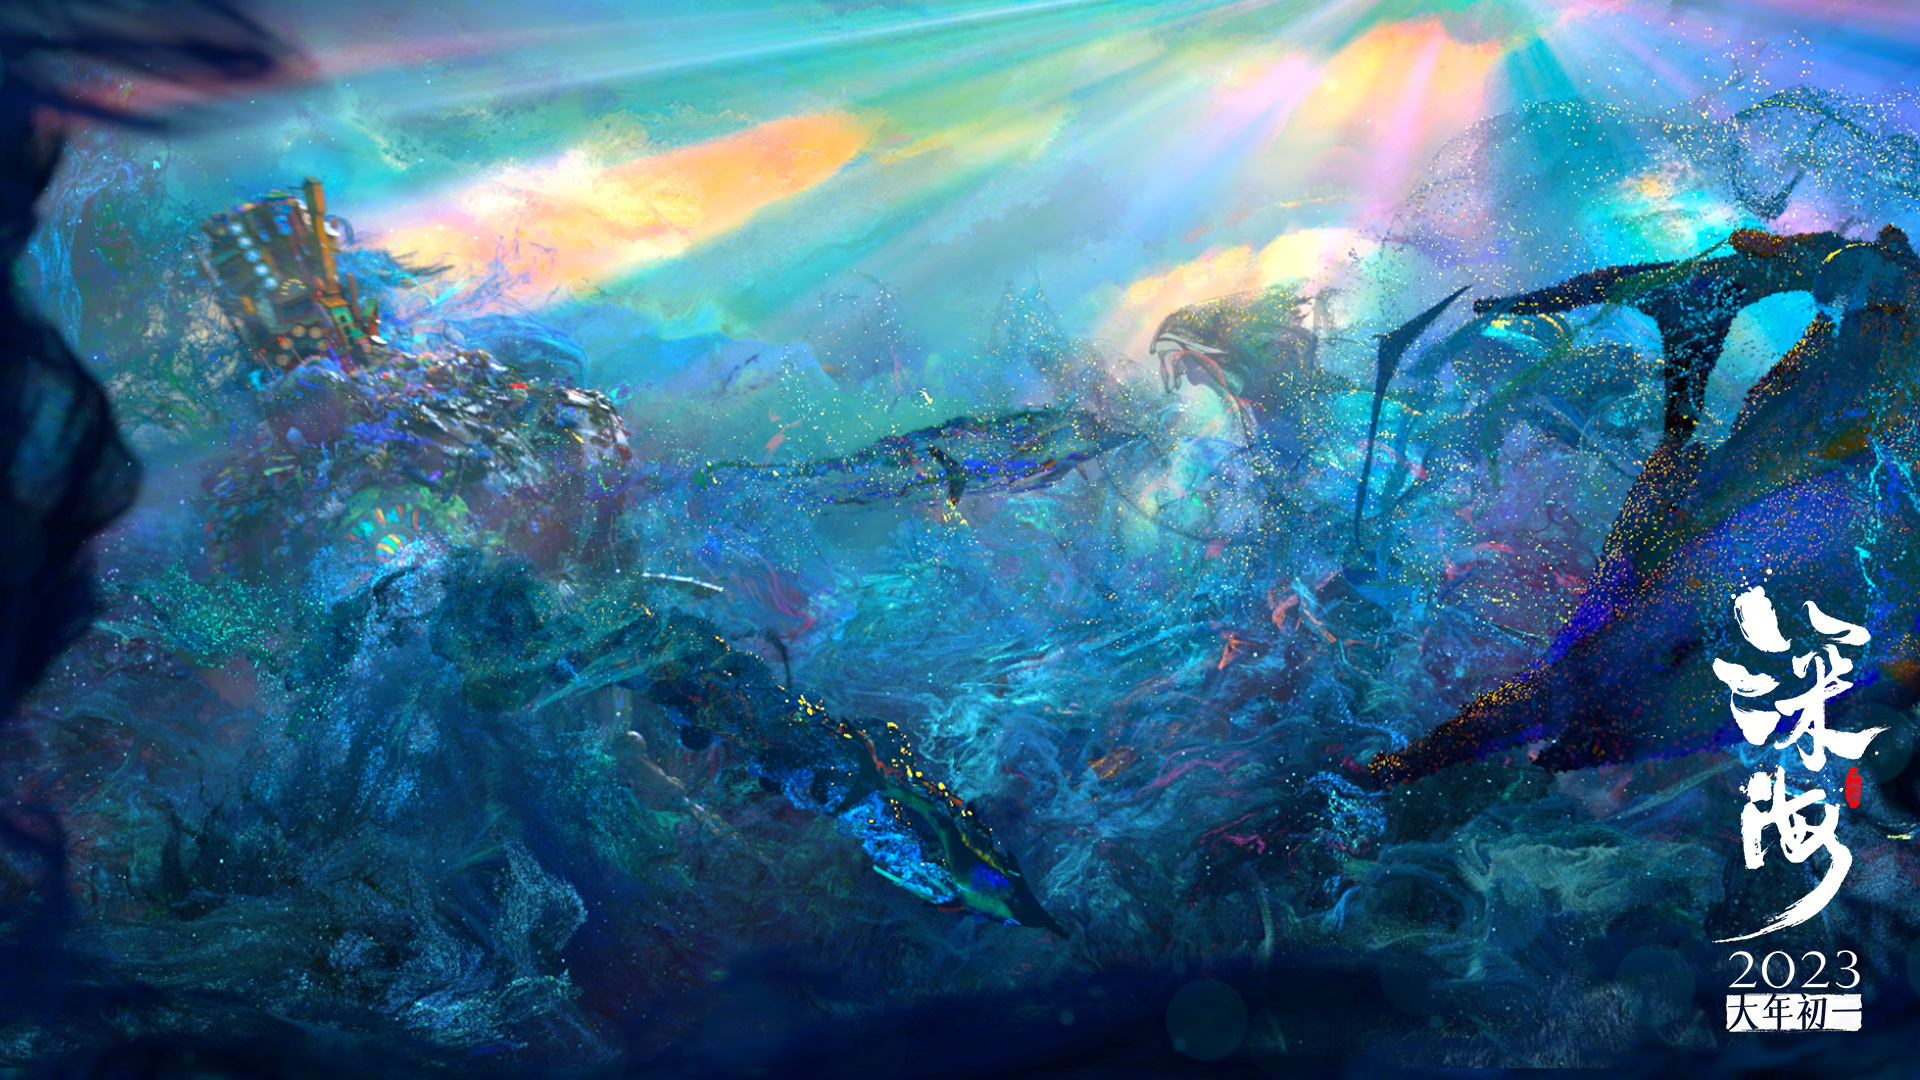 【洛克王国】深海霸主超进化领海至尊，4天完成，技能解析，性格分析 - 哔哩哔哩